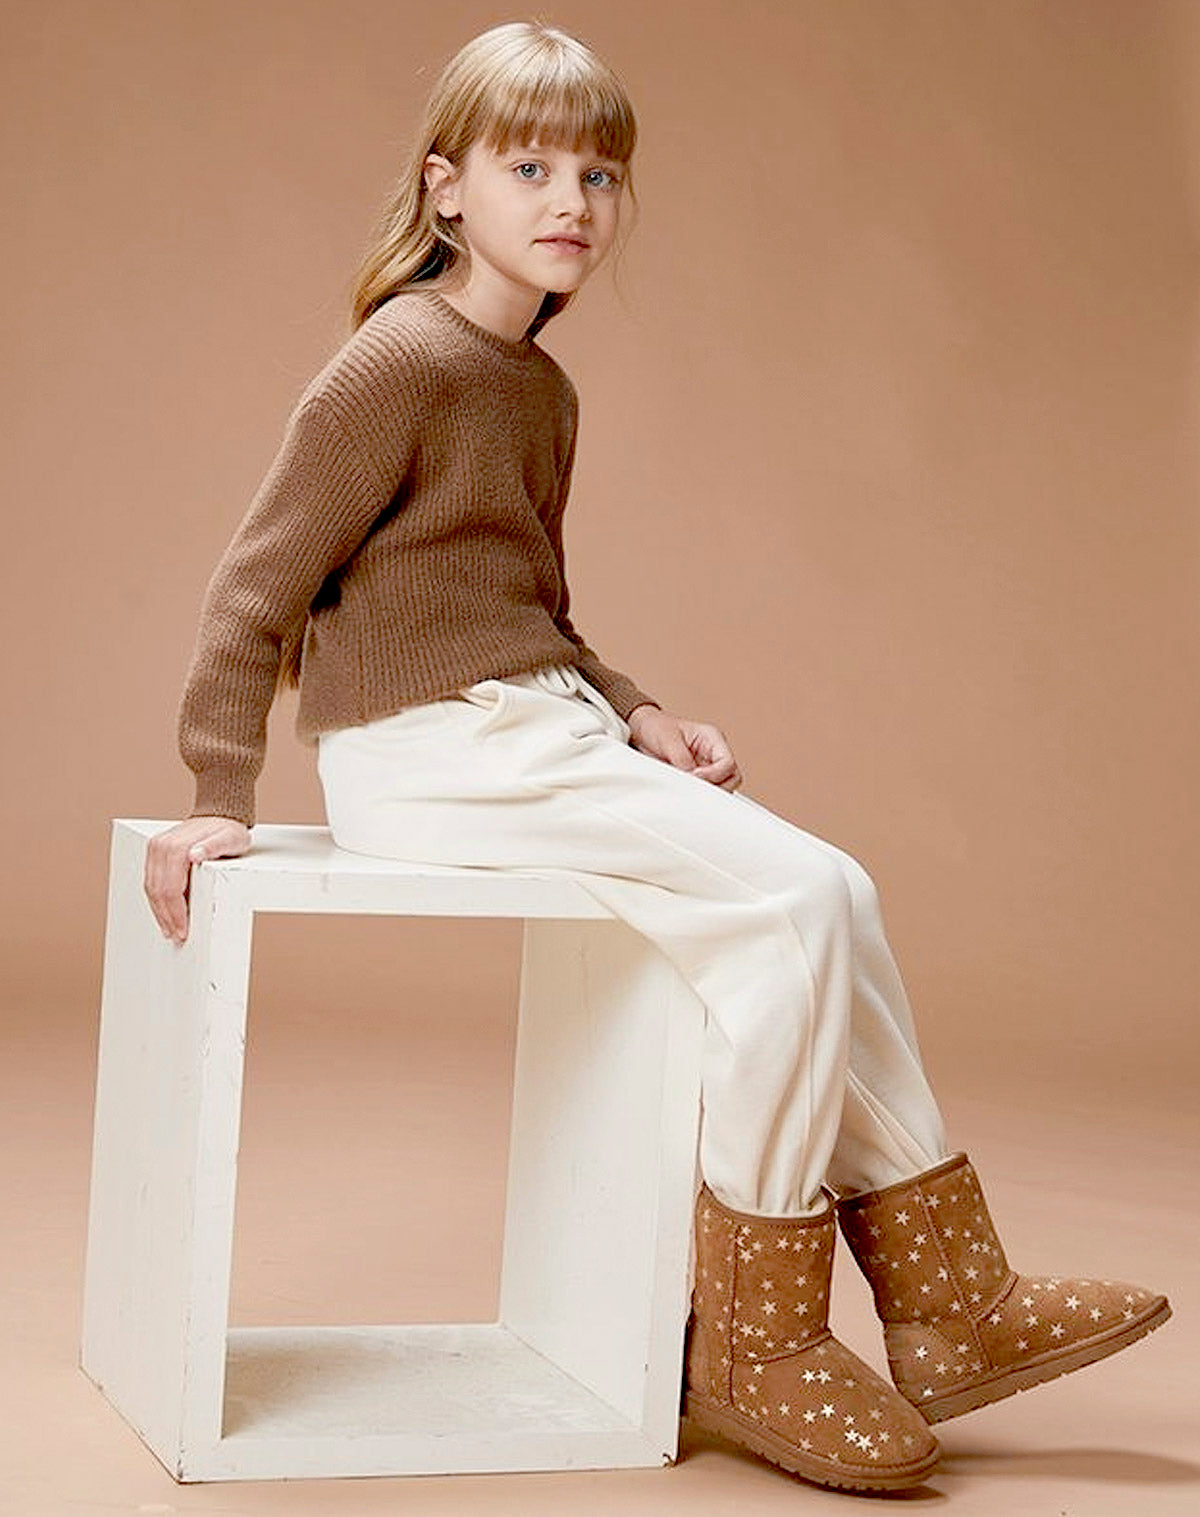 Children's sheepskin boots in stylish designs